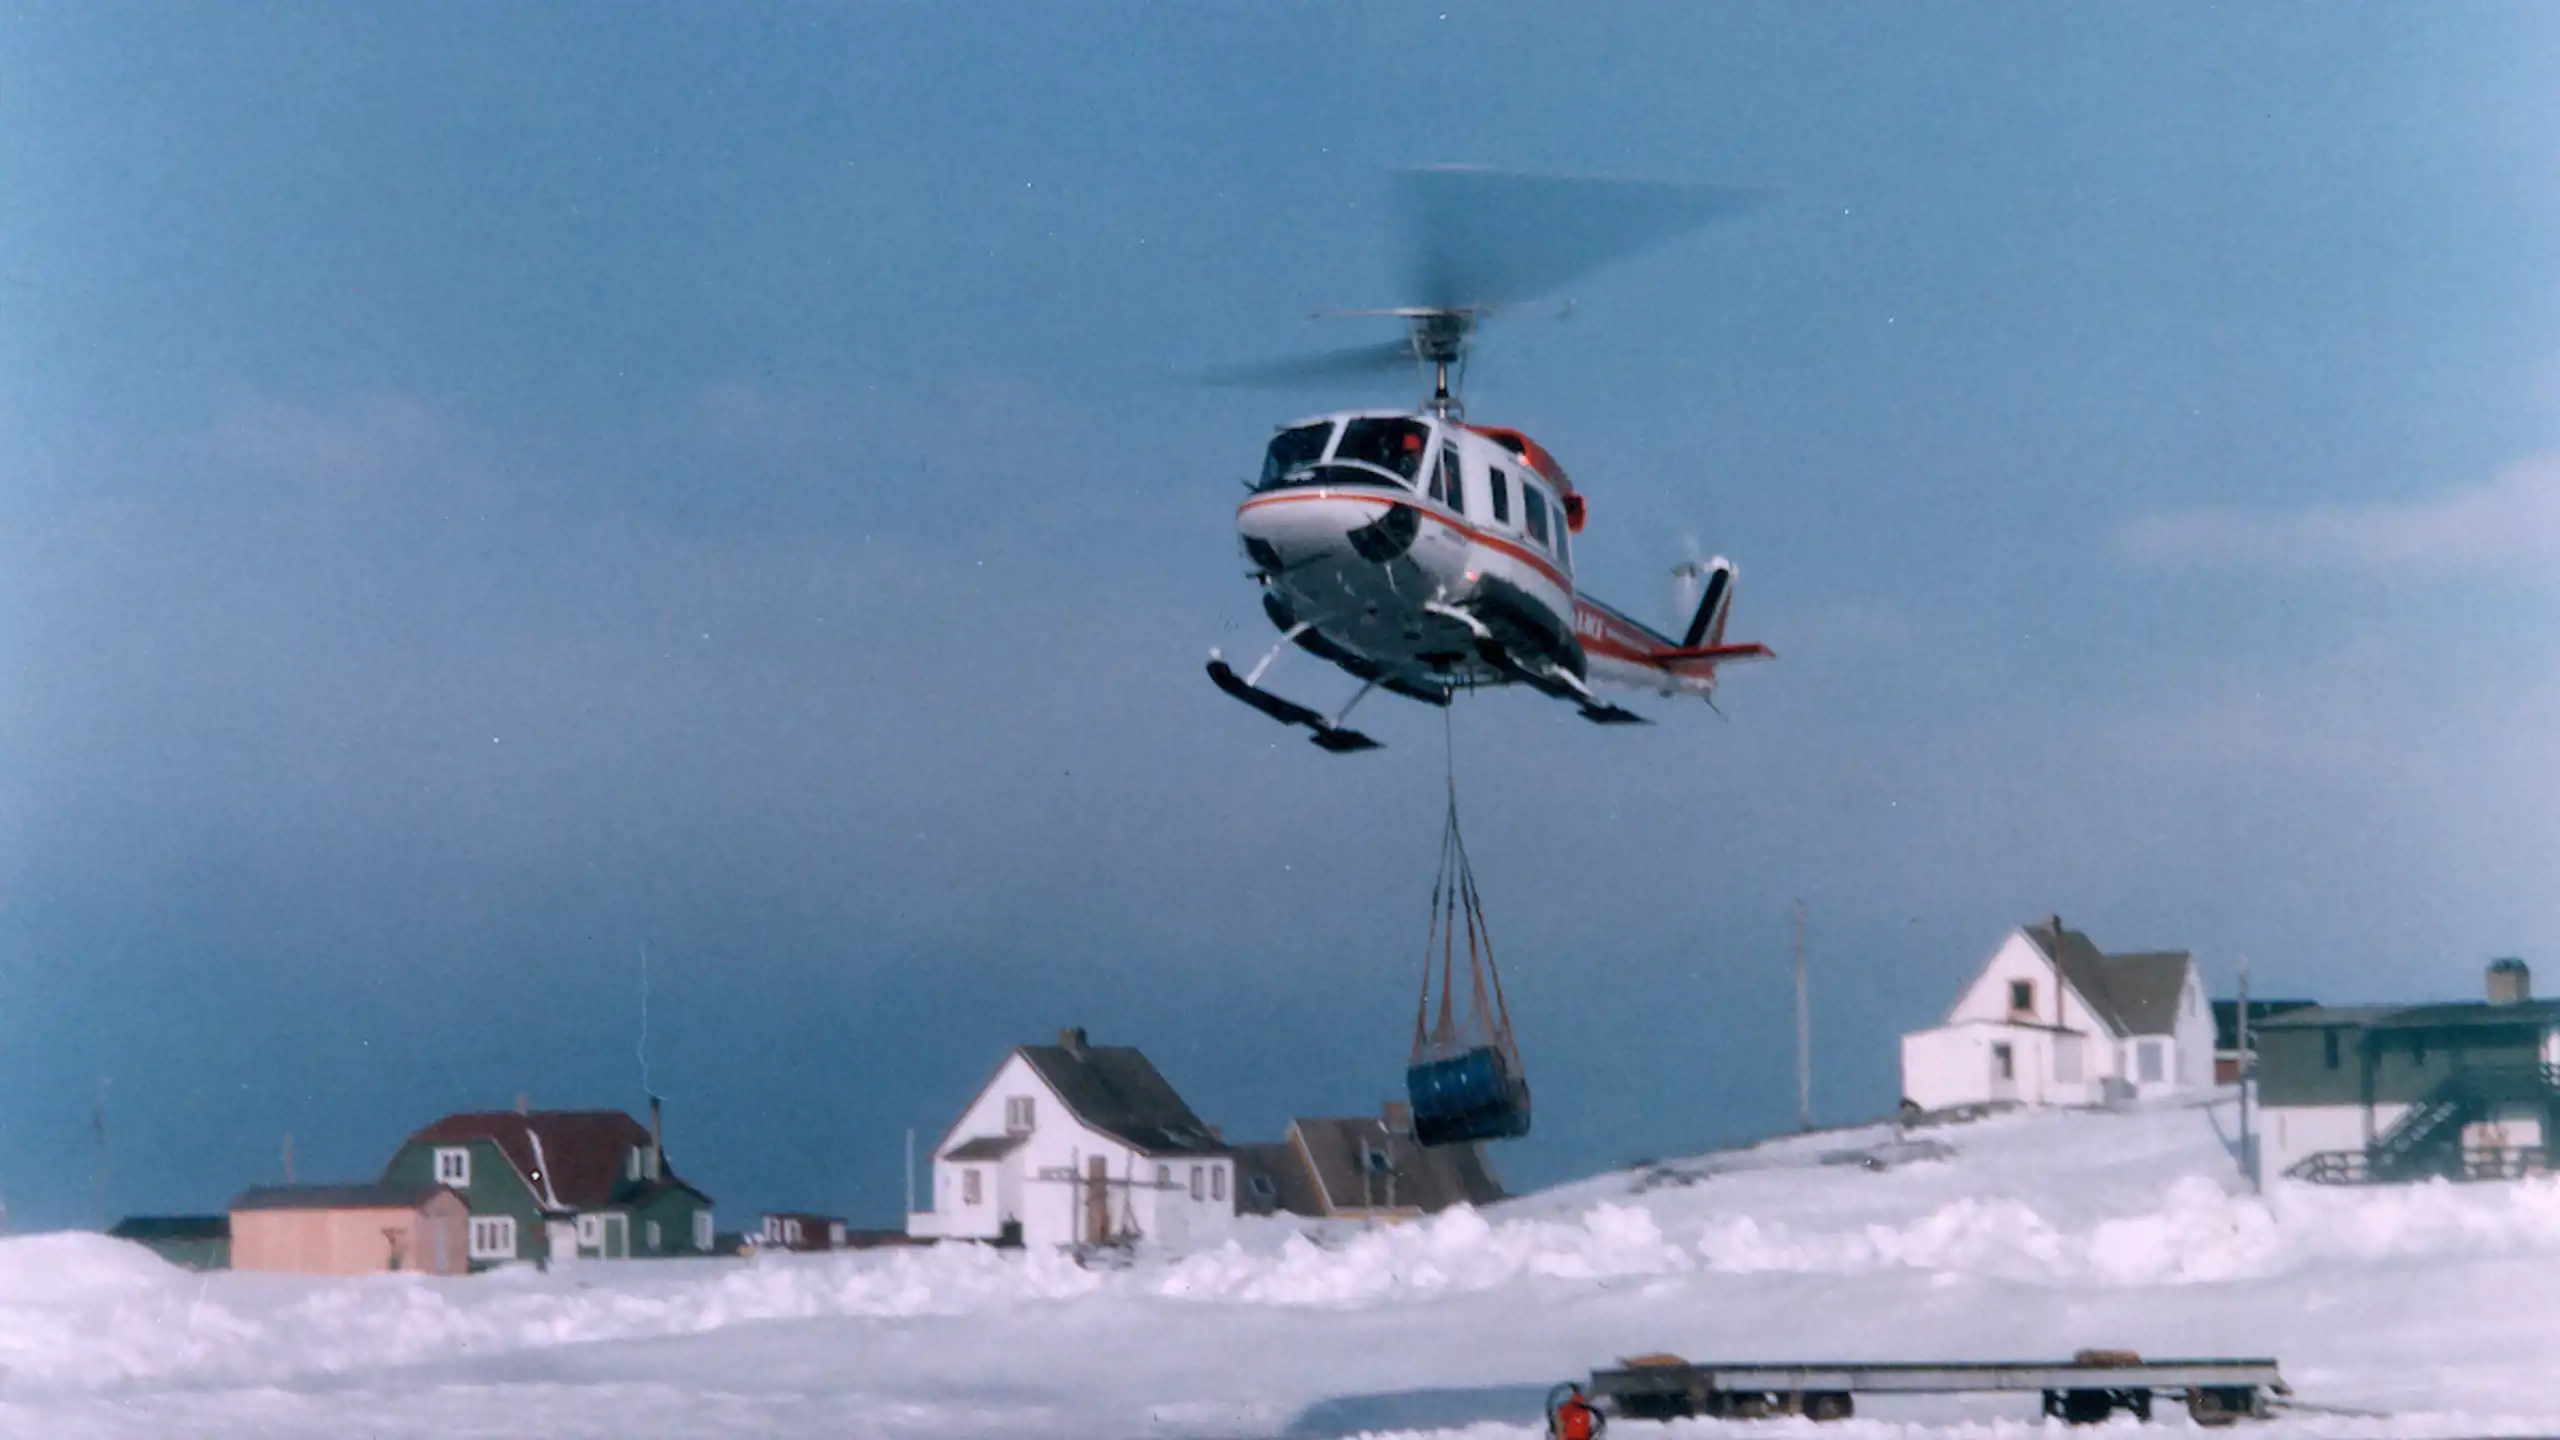 B212 Nuup heliportiani, 1979-mi mittarfittaarnerup kingorna matuneqartumi. Ass. Toqqorsivitsinniit